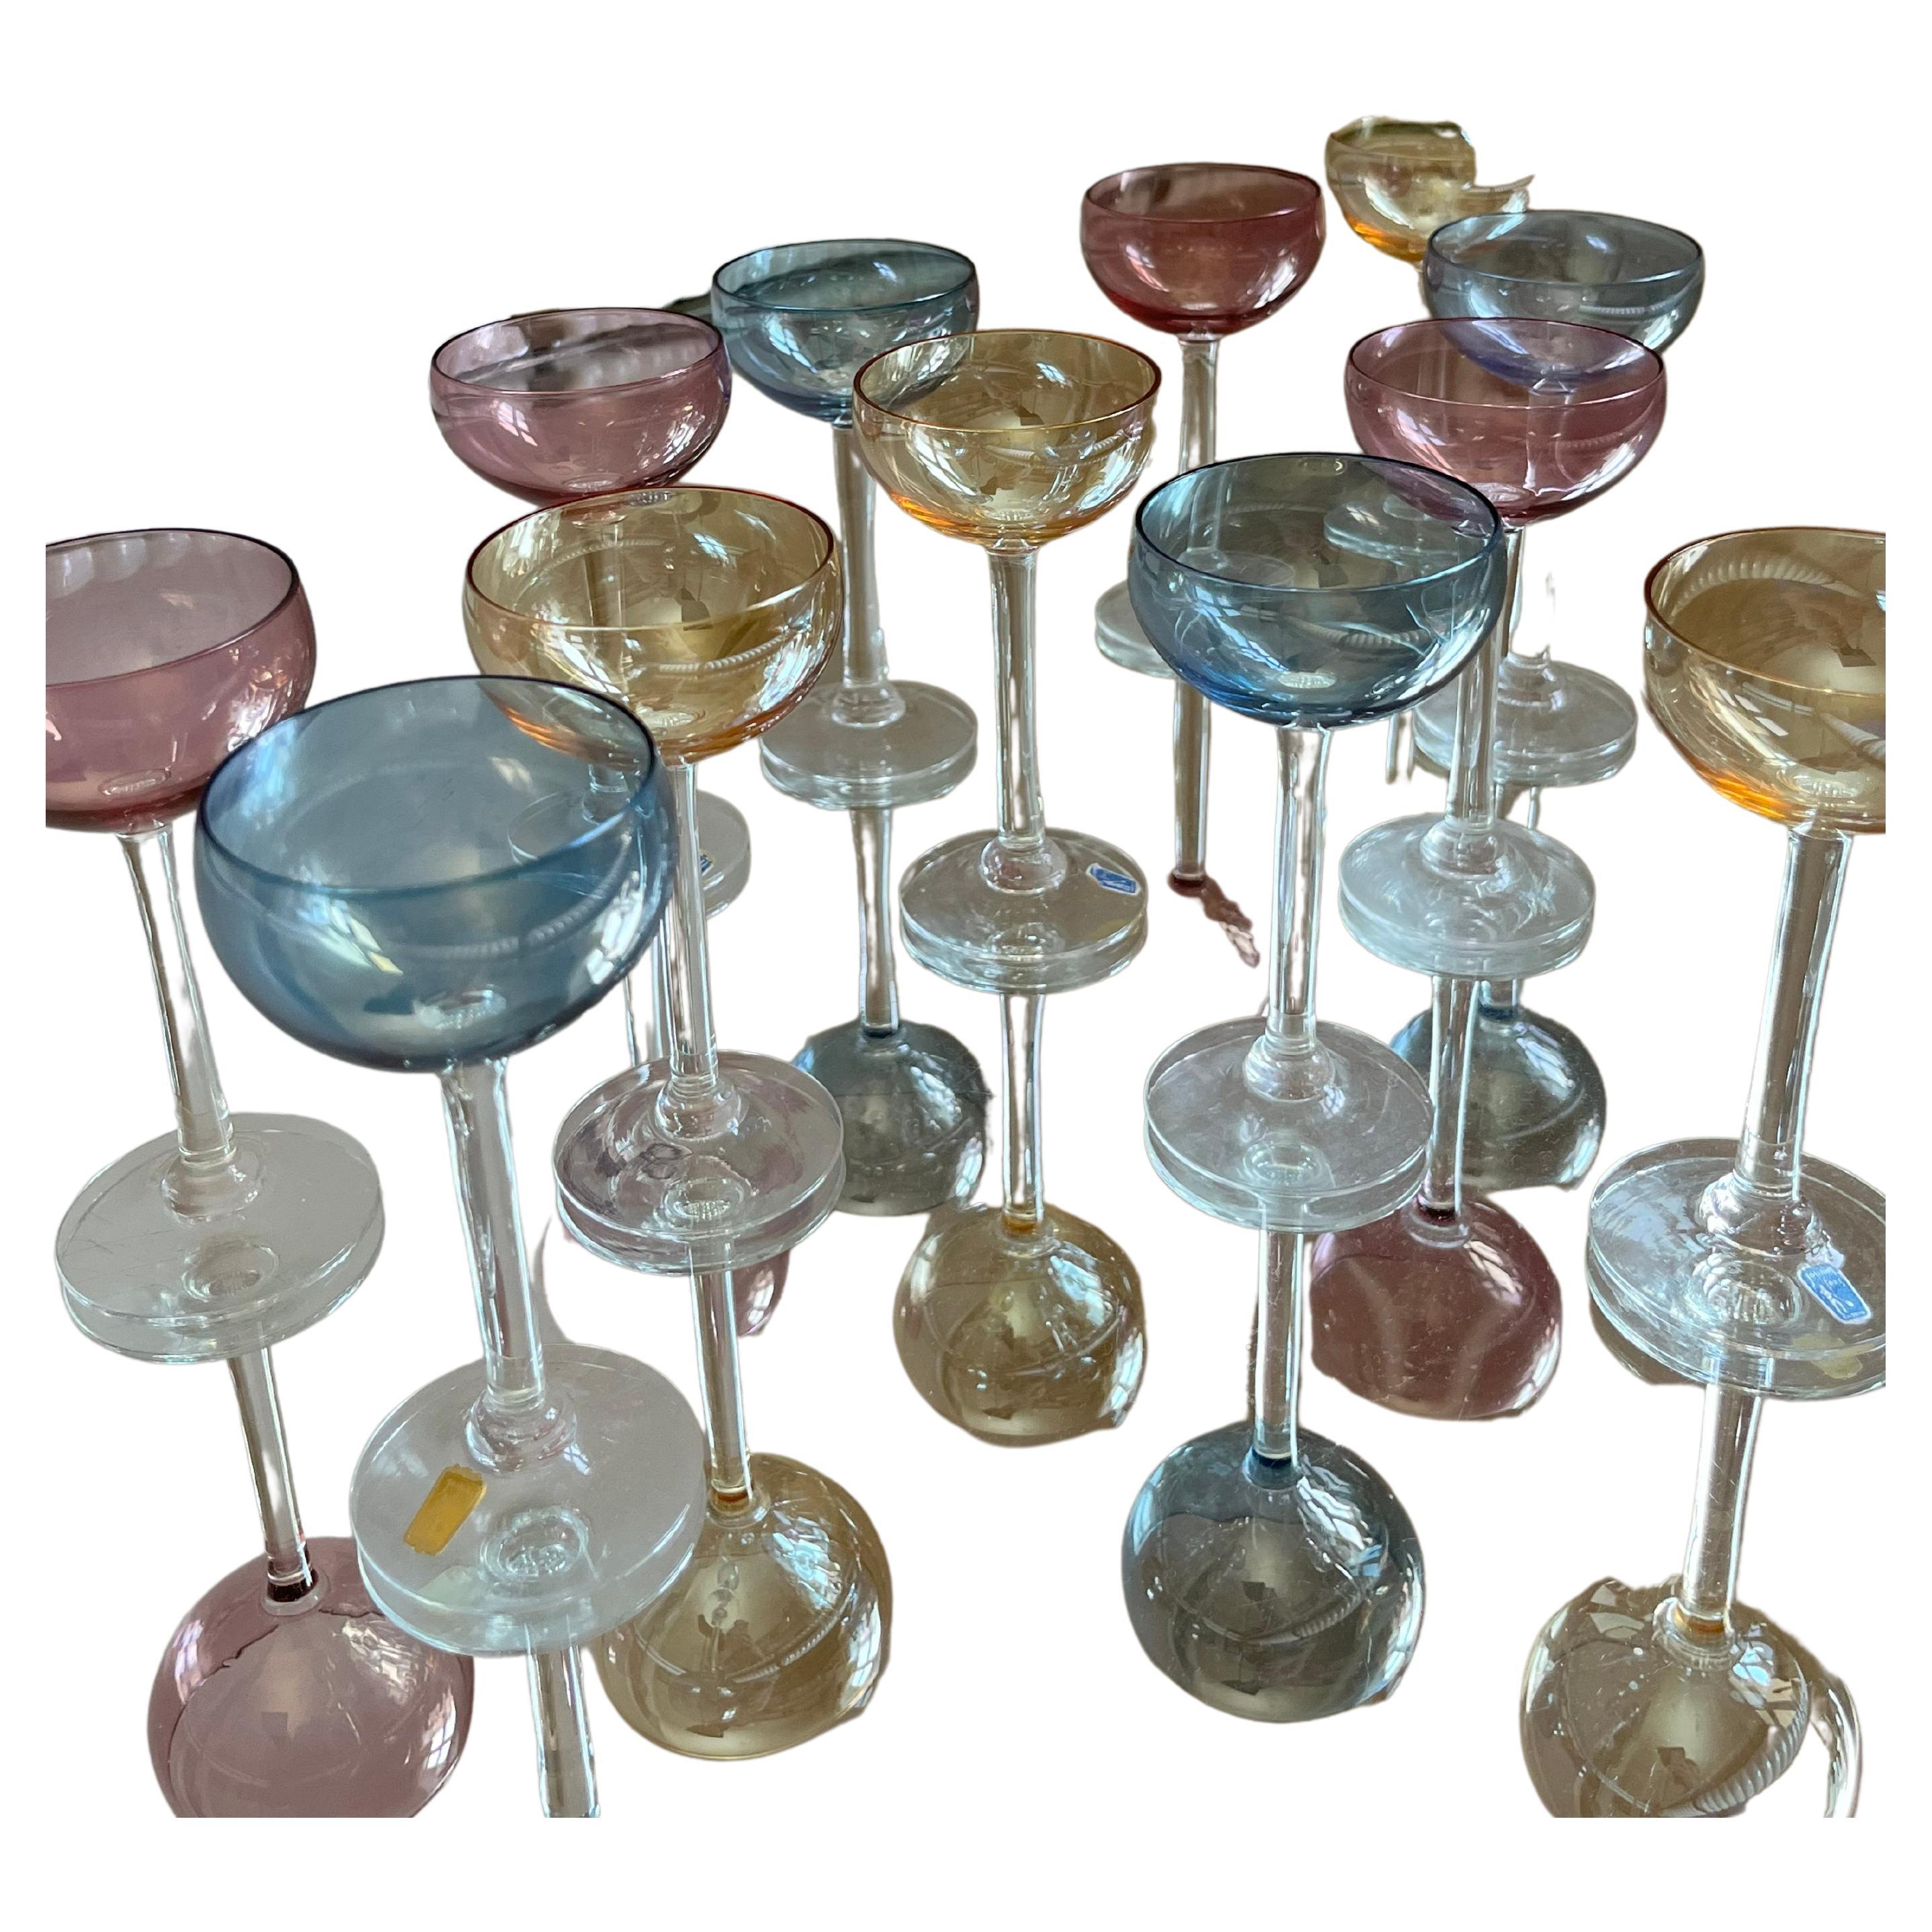 12 verres vintage colorés de la verrerie suédoise Johansfors